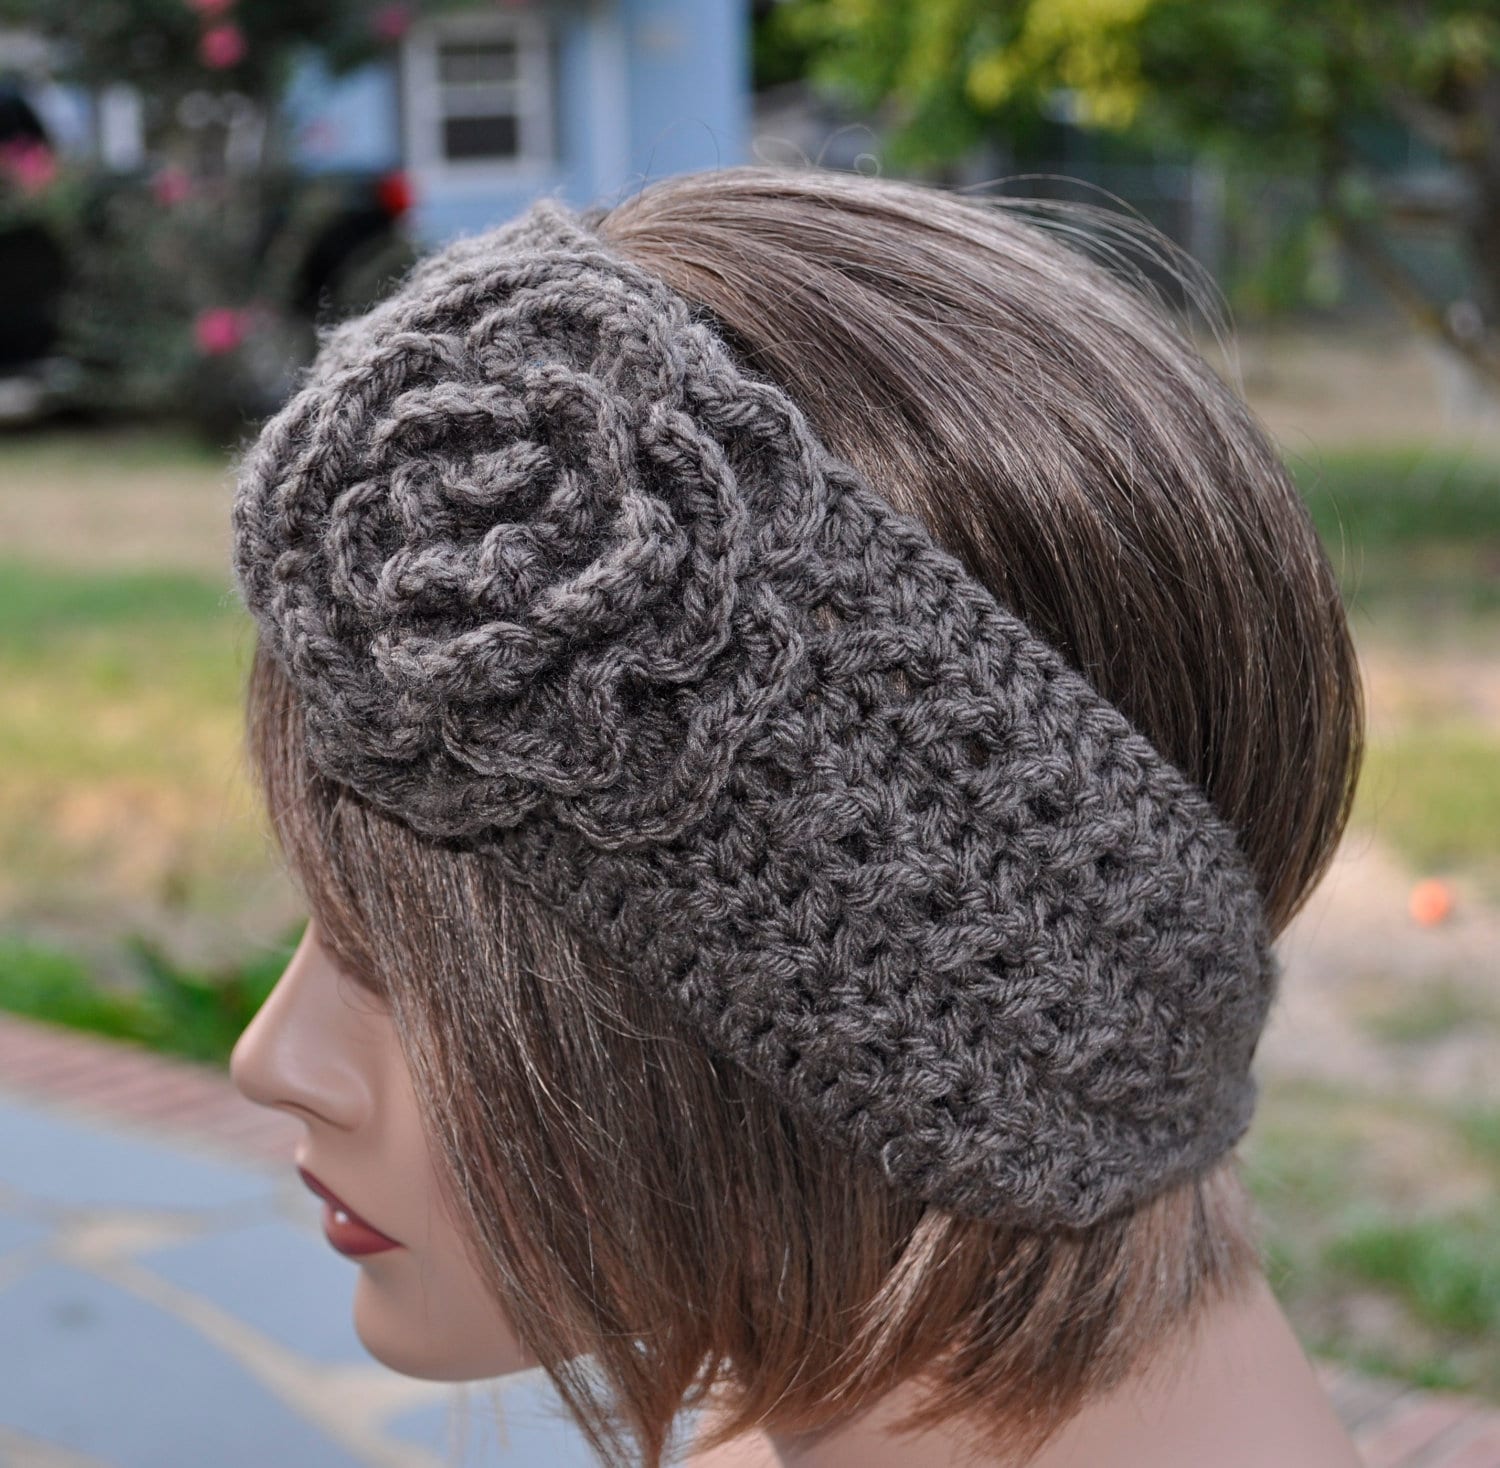 Headband Handmade gift ideas Crochet Ear Warmer Wool Winter wear Headwrap